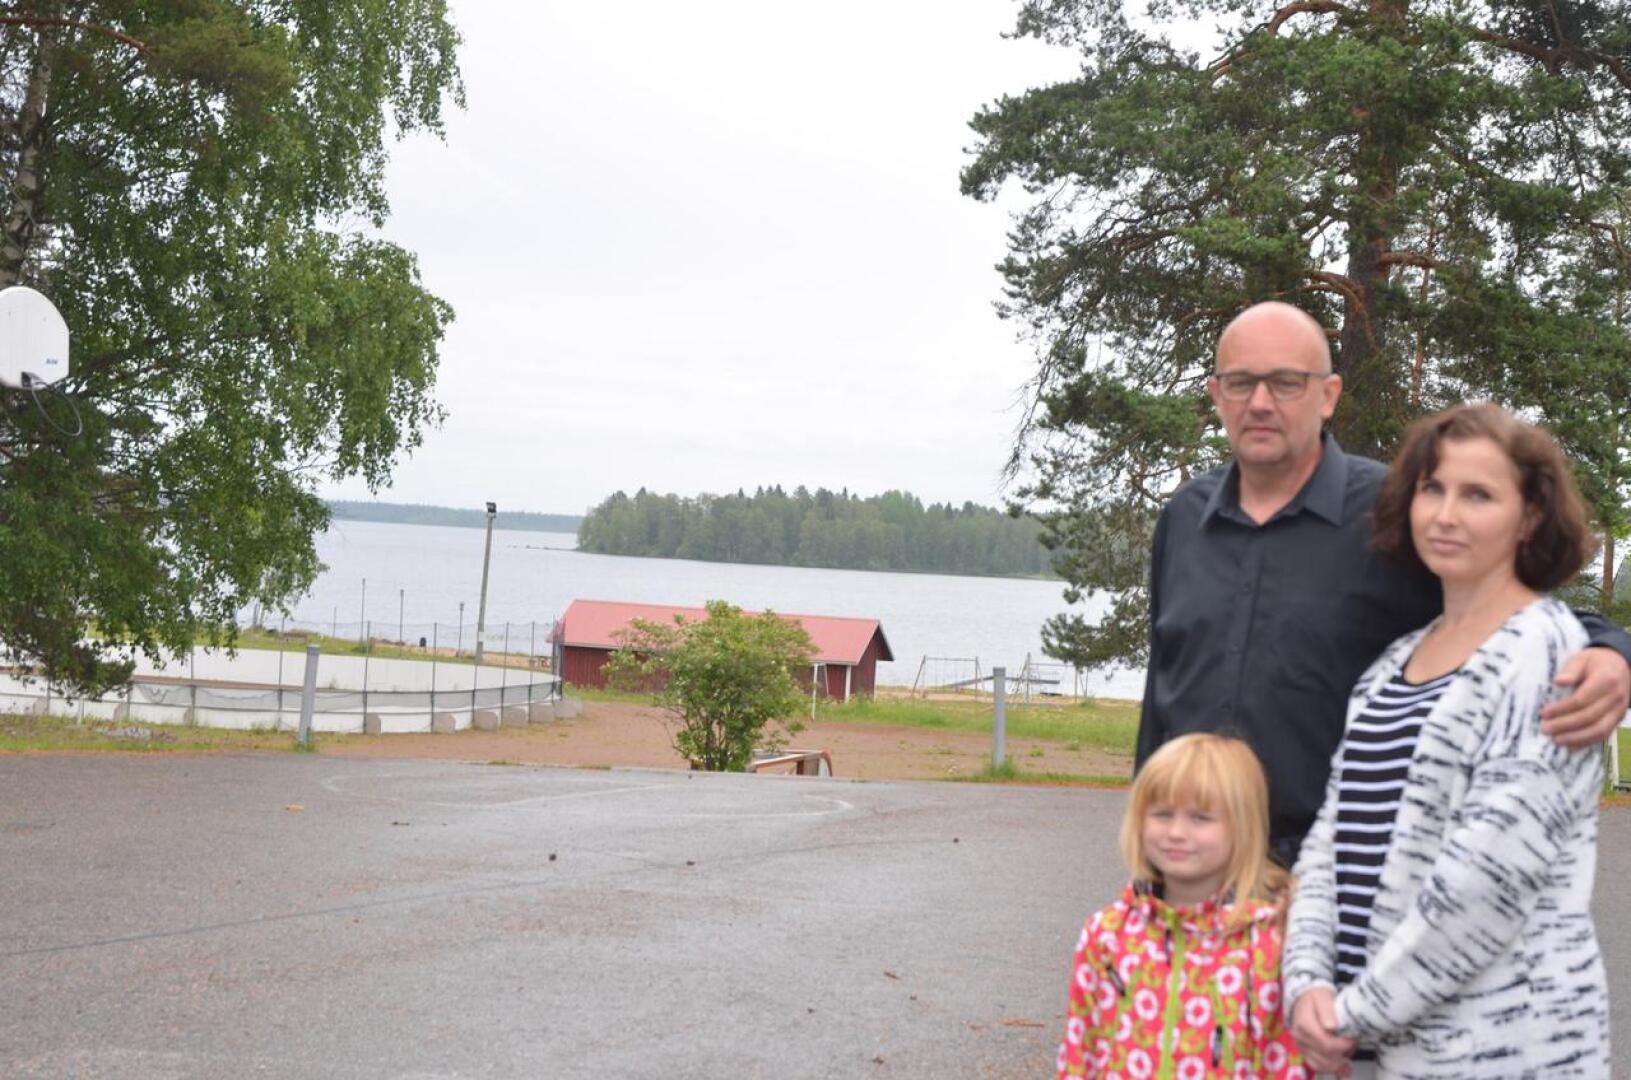 Hieno paikka. Lestijärven koulu rakennetaan hienolle paikalle järvimaisemaan. Kunnanhallituksen puheenjohtaja Jukka-Pekka Tuikka, Janika-vaimo ja heidän tyttärensä Janette, joka on tulossa eskari-ikään, ihastelivat paikkaa.